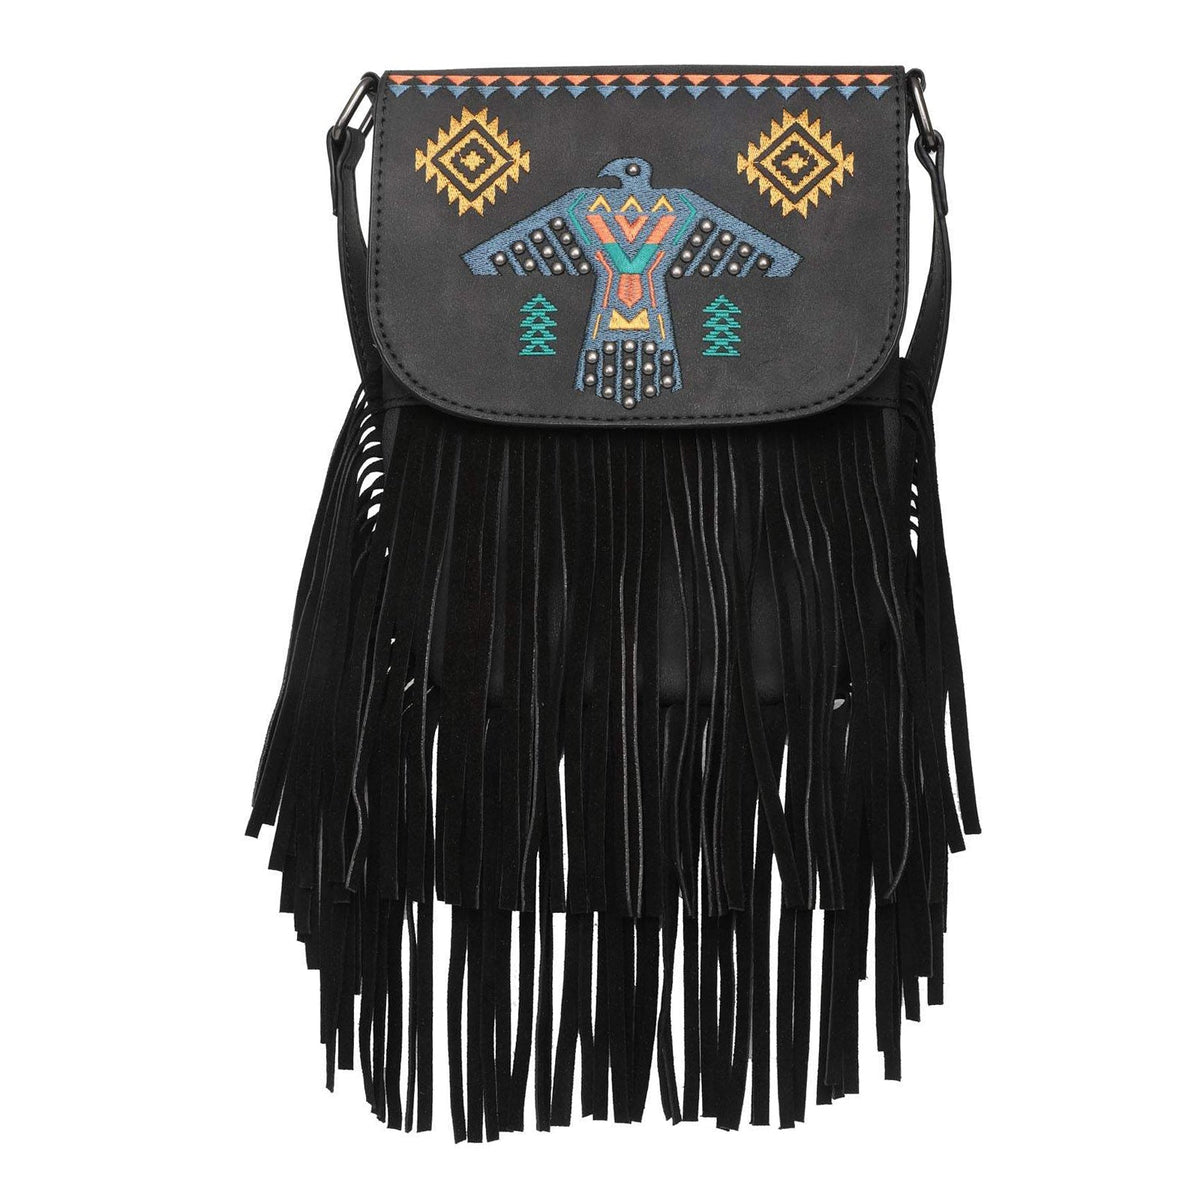 Wrangler Embroidered Thunderbird Aztec Fringe Crossbody - Montana West World